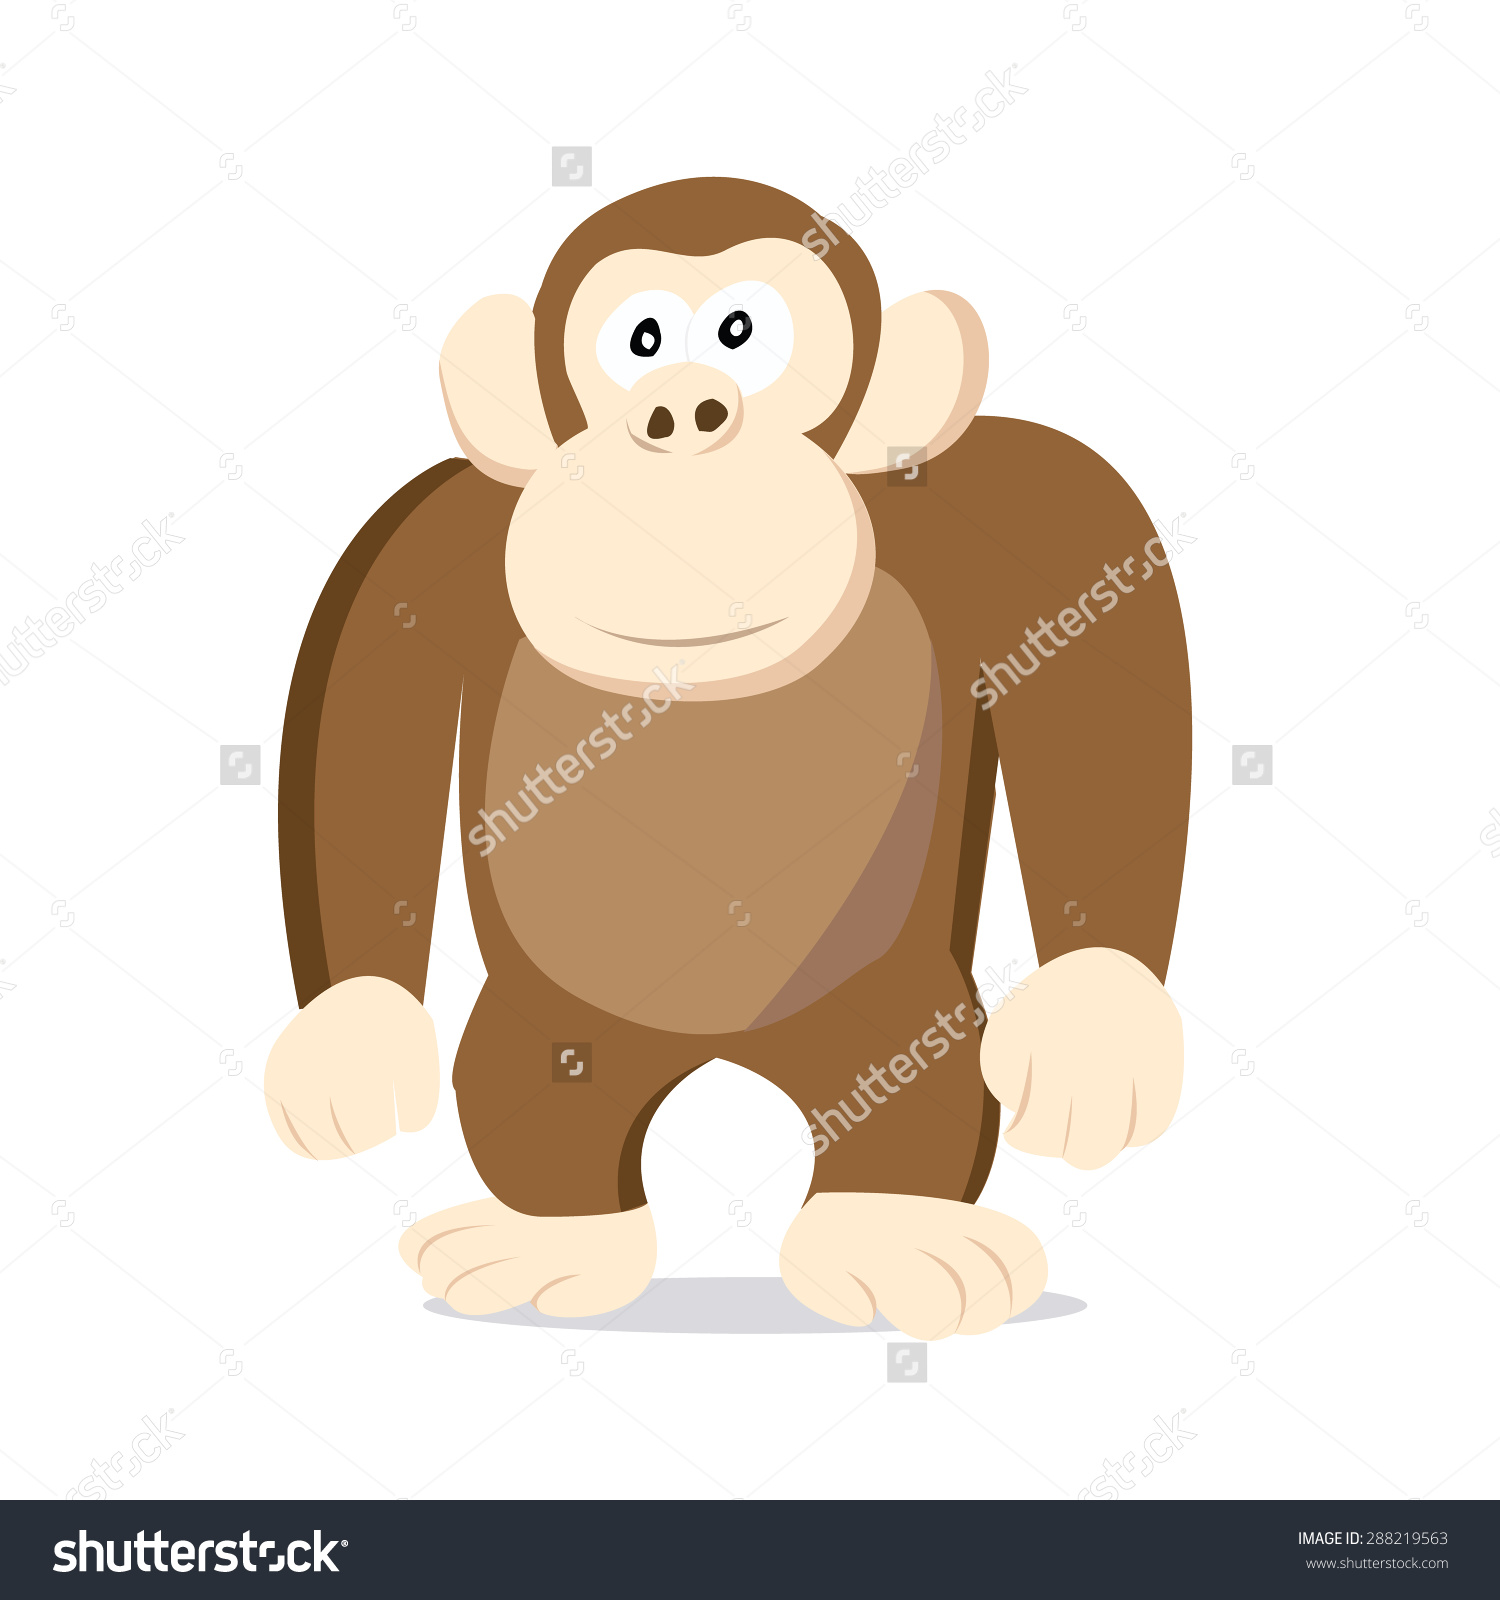 Stoned Looking Cartoon Brown Monkey Vector Stock Vector 288219563.